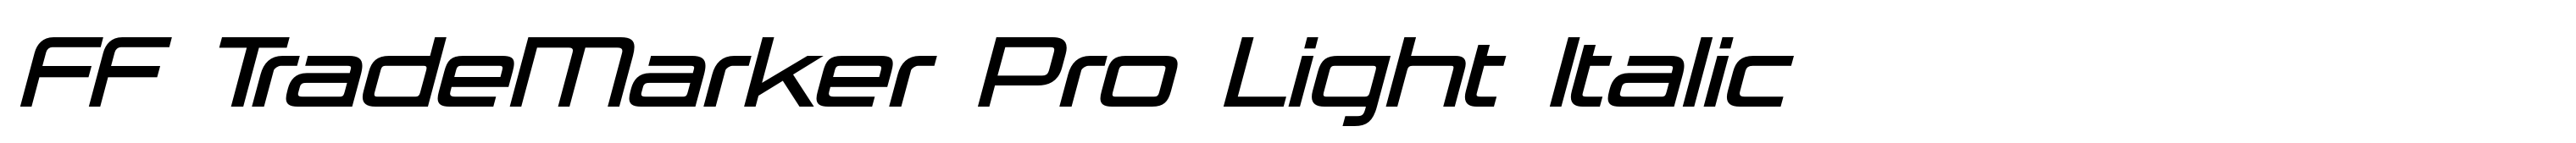 FF TradeMarker Pro Light Italic